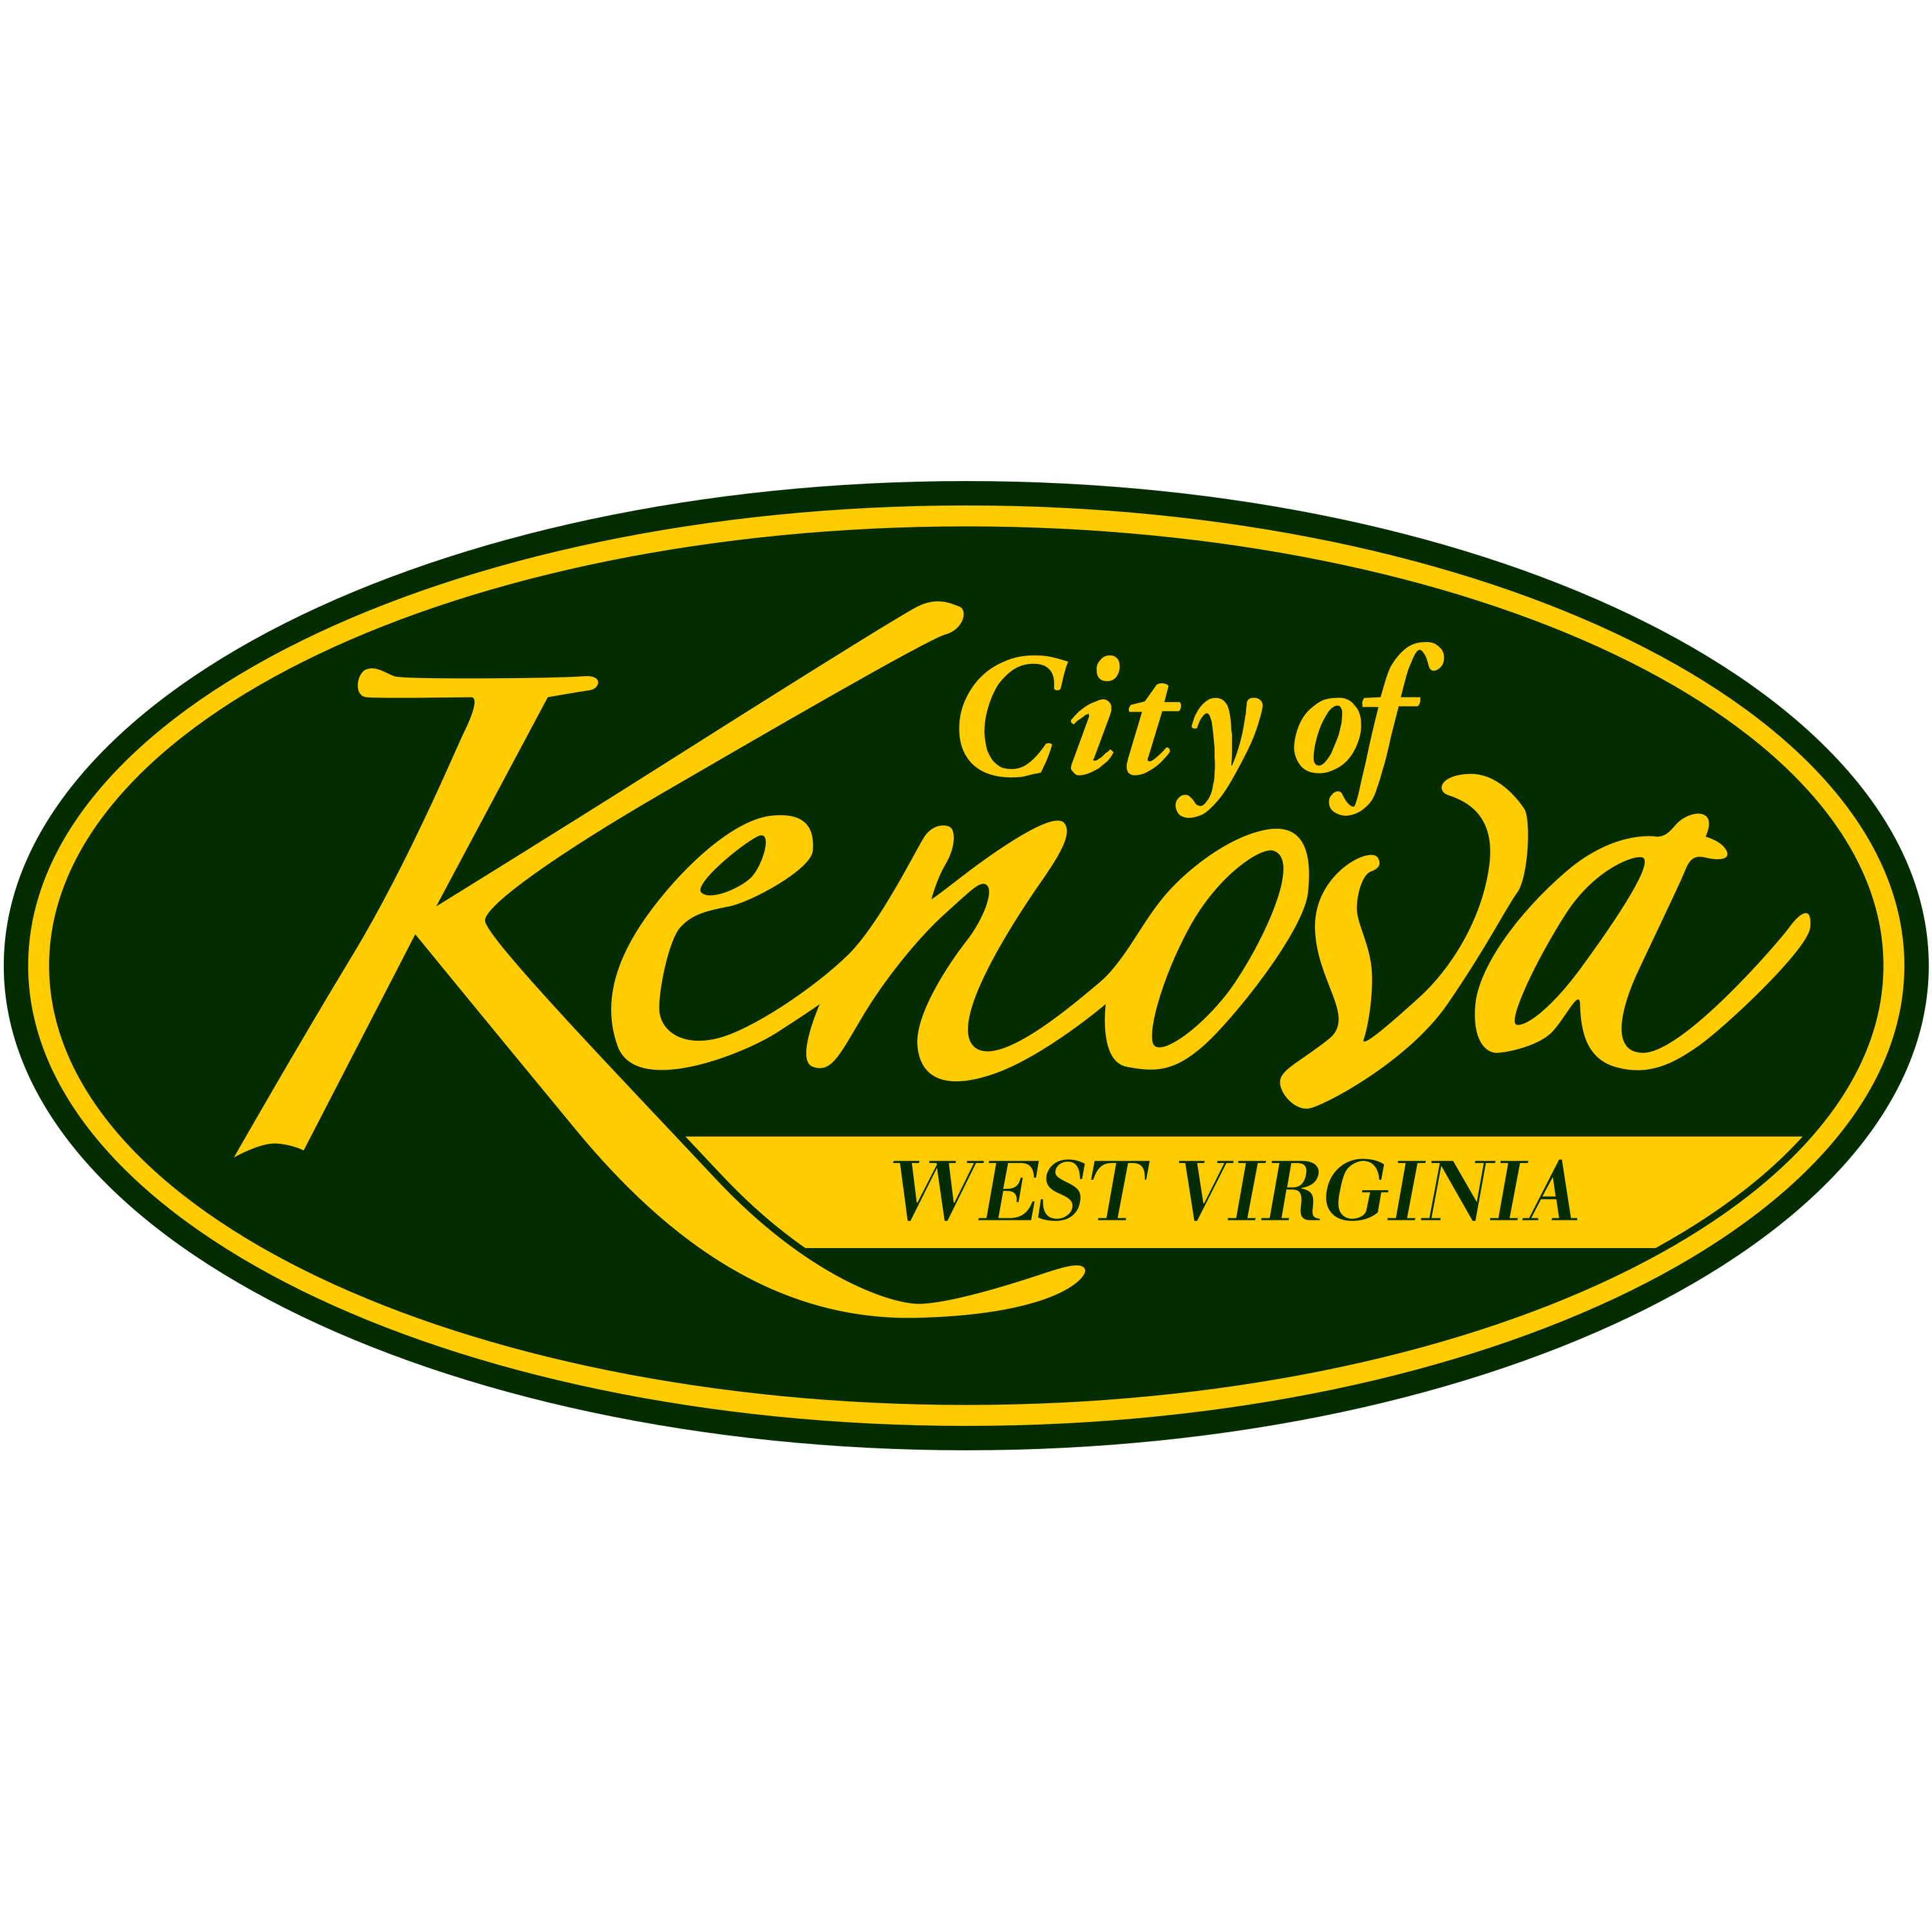 Kenova West Virginia Logo Transparent Image